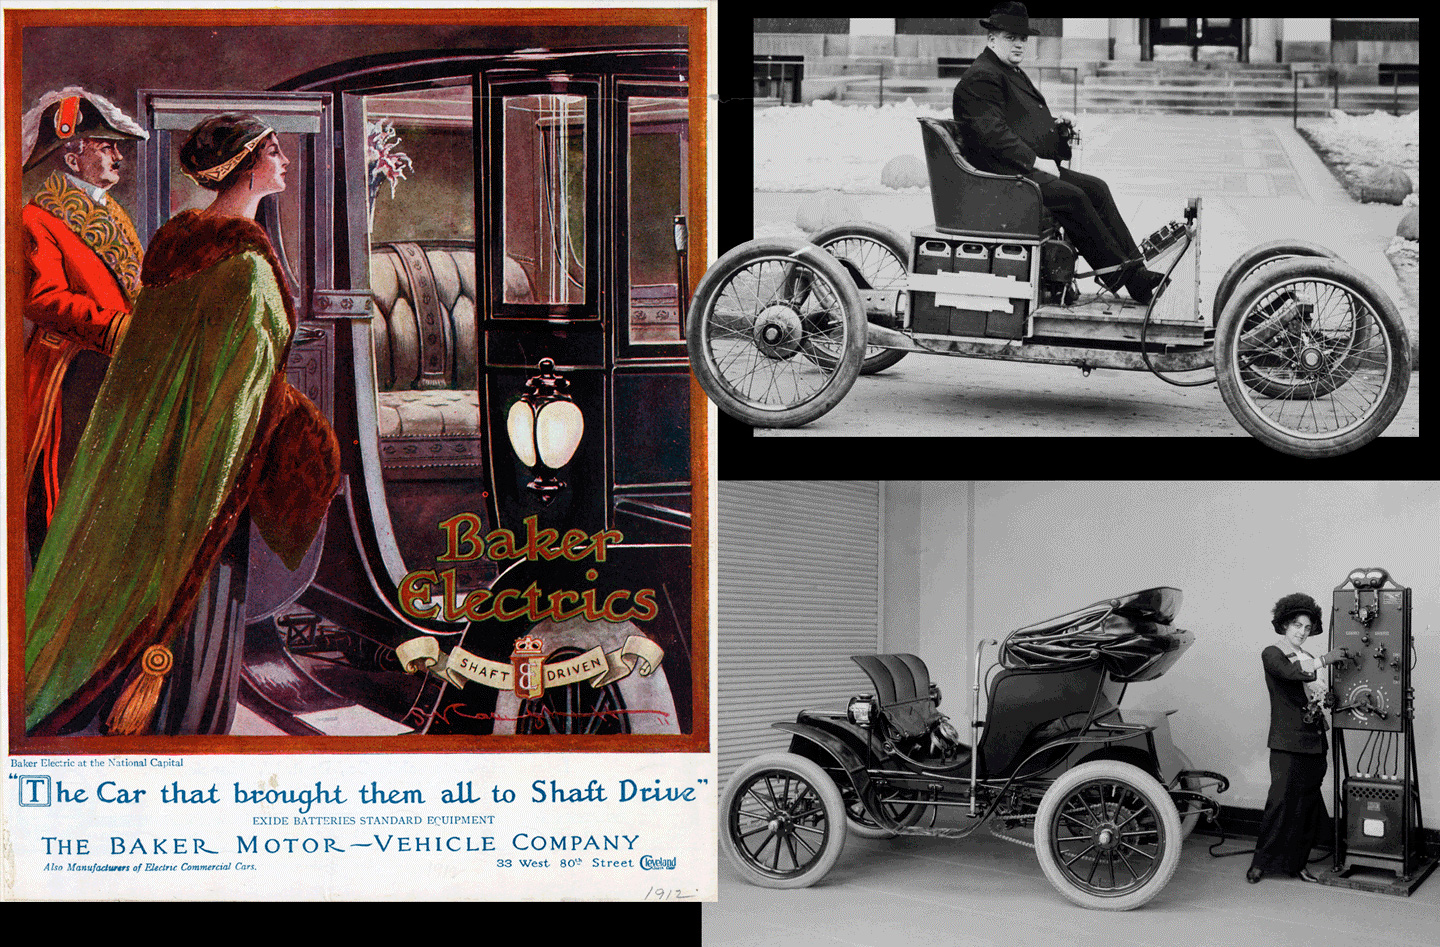 Quảng cáo một mẫu xe điện từ Baker Motor năm 1912 (bên trái). Thử nghiệm xe chạy điện của Ford (phía trên bên phải). Một phụ nữ đang sạc điện cho mẫu Columbia Mark 68 Victoria năm 1912 (bên phải,phía dưới)